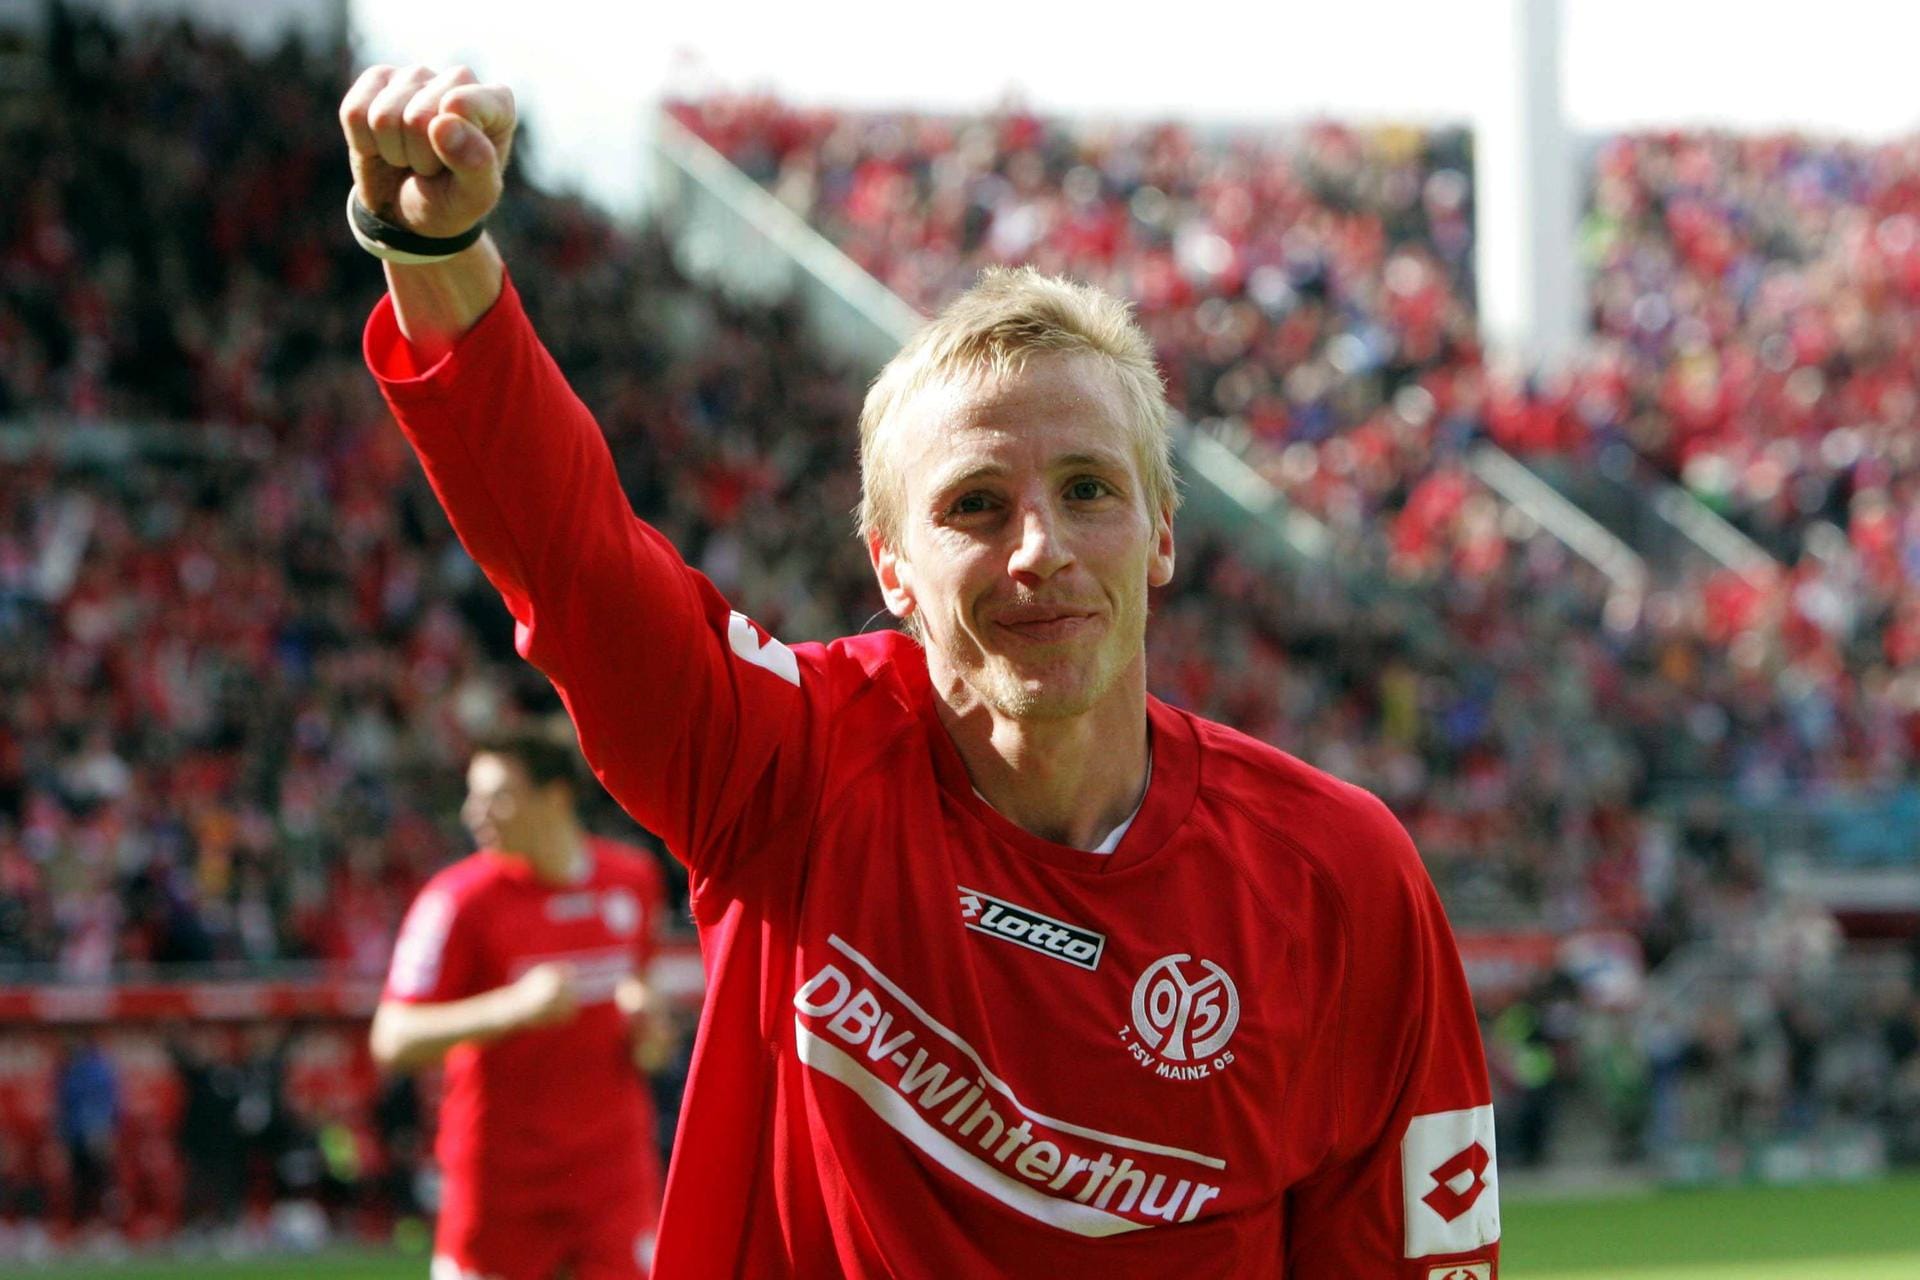 Michael Thurk (1999 - 2006): Vom SV Jügersheim kam Michael Thurk nach Mainz. In 202 Pflichtspielen erzielte der Mittelstürmer 64 Tore für Mainz. Unter Sandro Schwarz war Thurk Co-Trainer. Jetzt sucht er als Scout Leihspieler für Mainz.